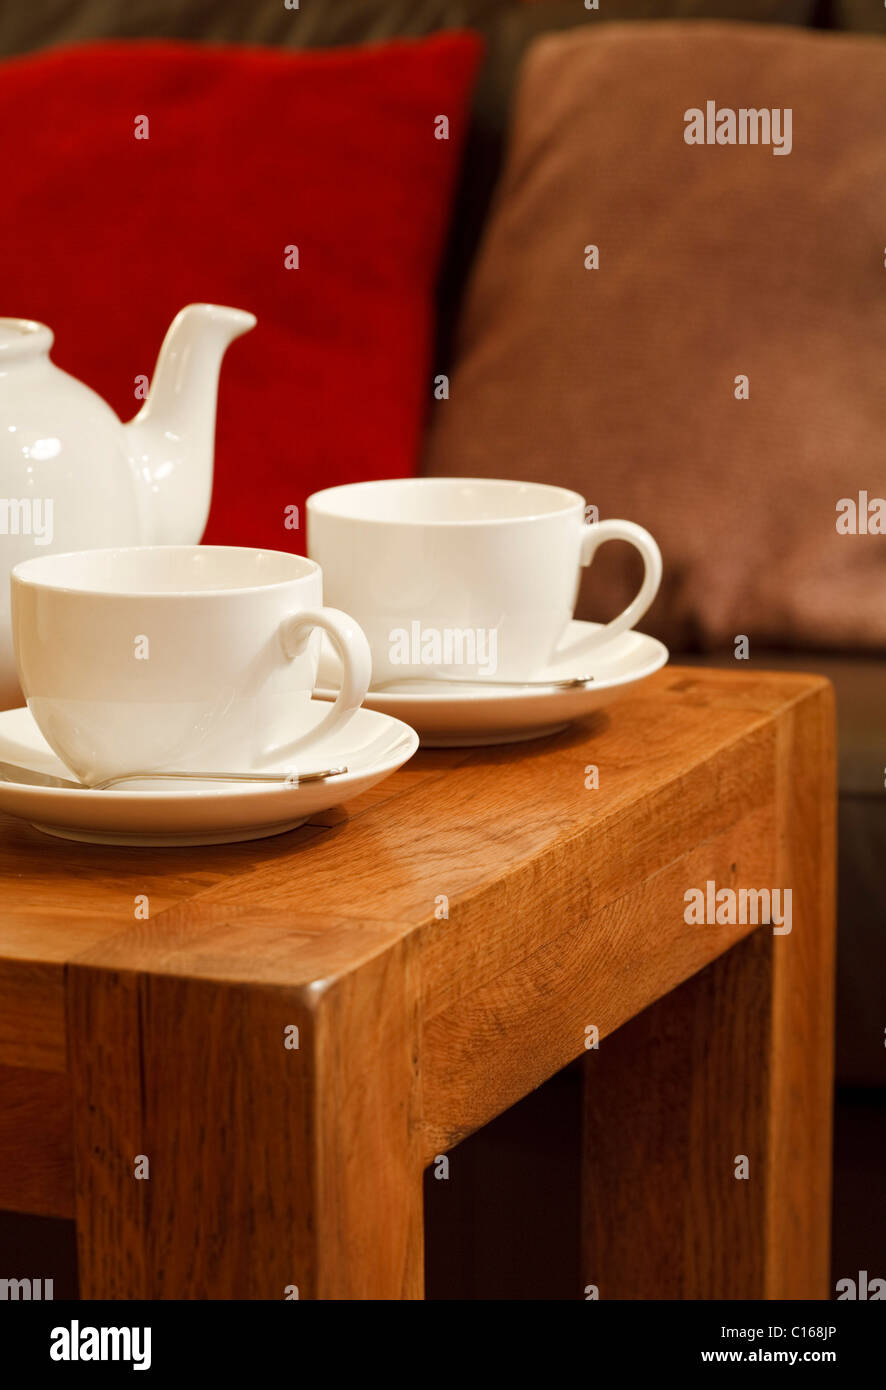 Dettaglio di un moderno arredamento con tavolo da caffè, teiera e teacups Foto Stock